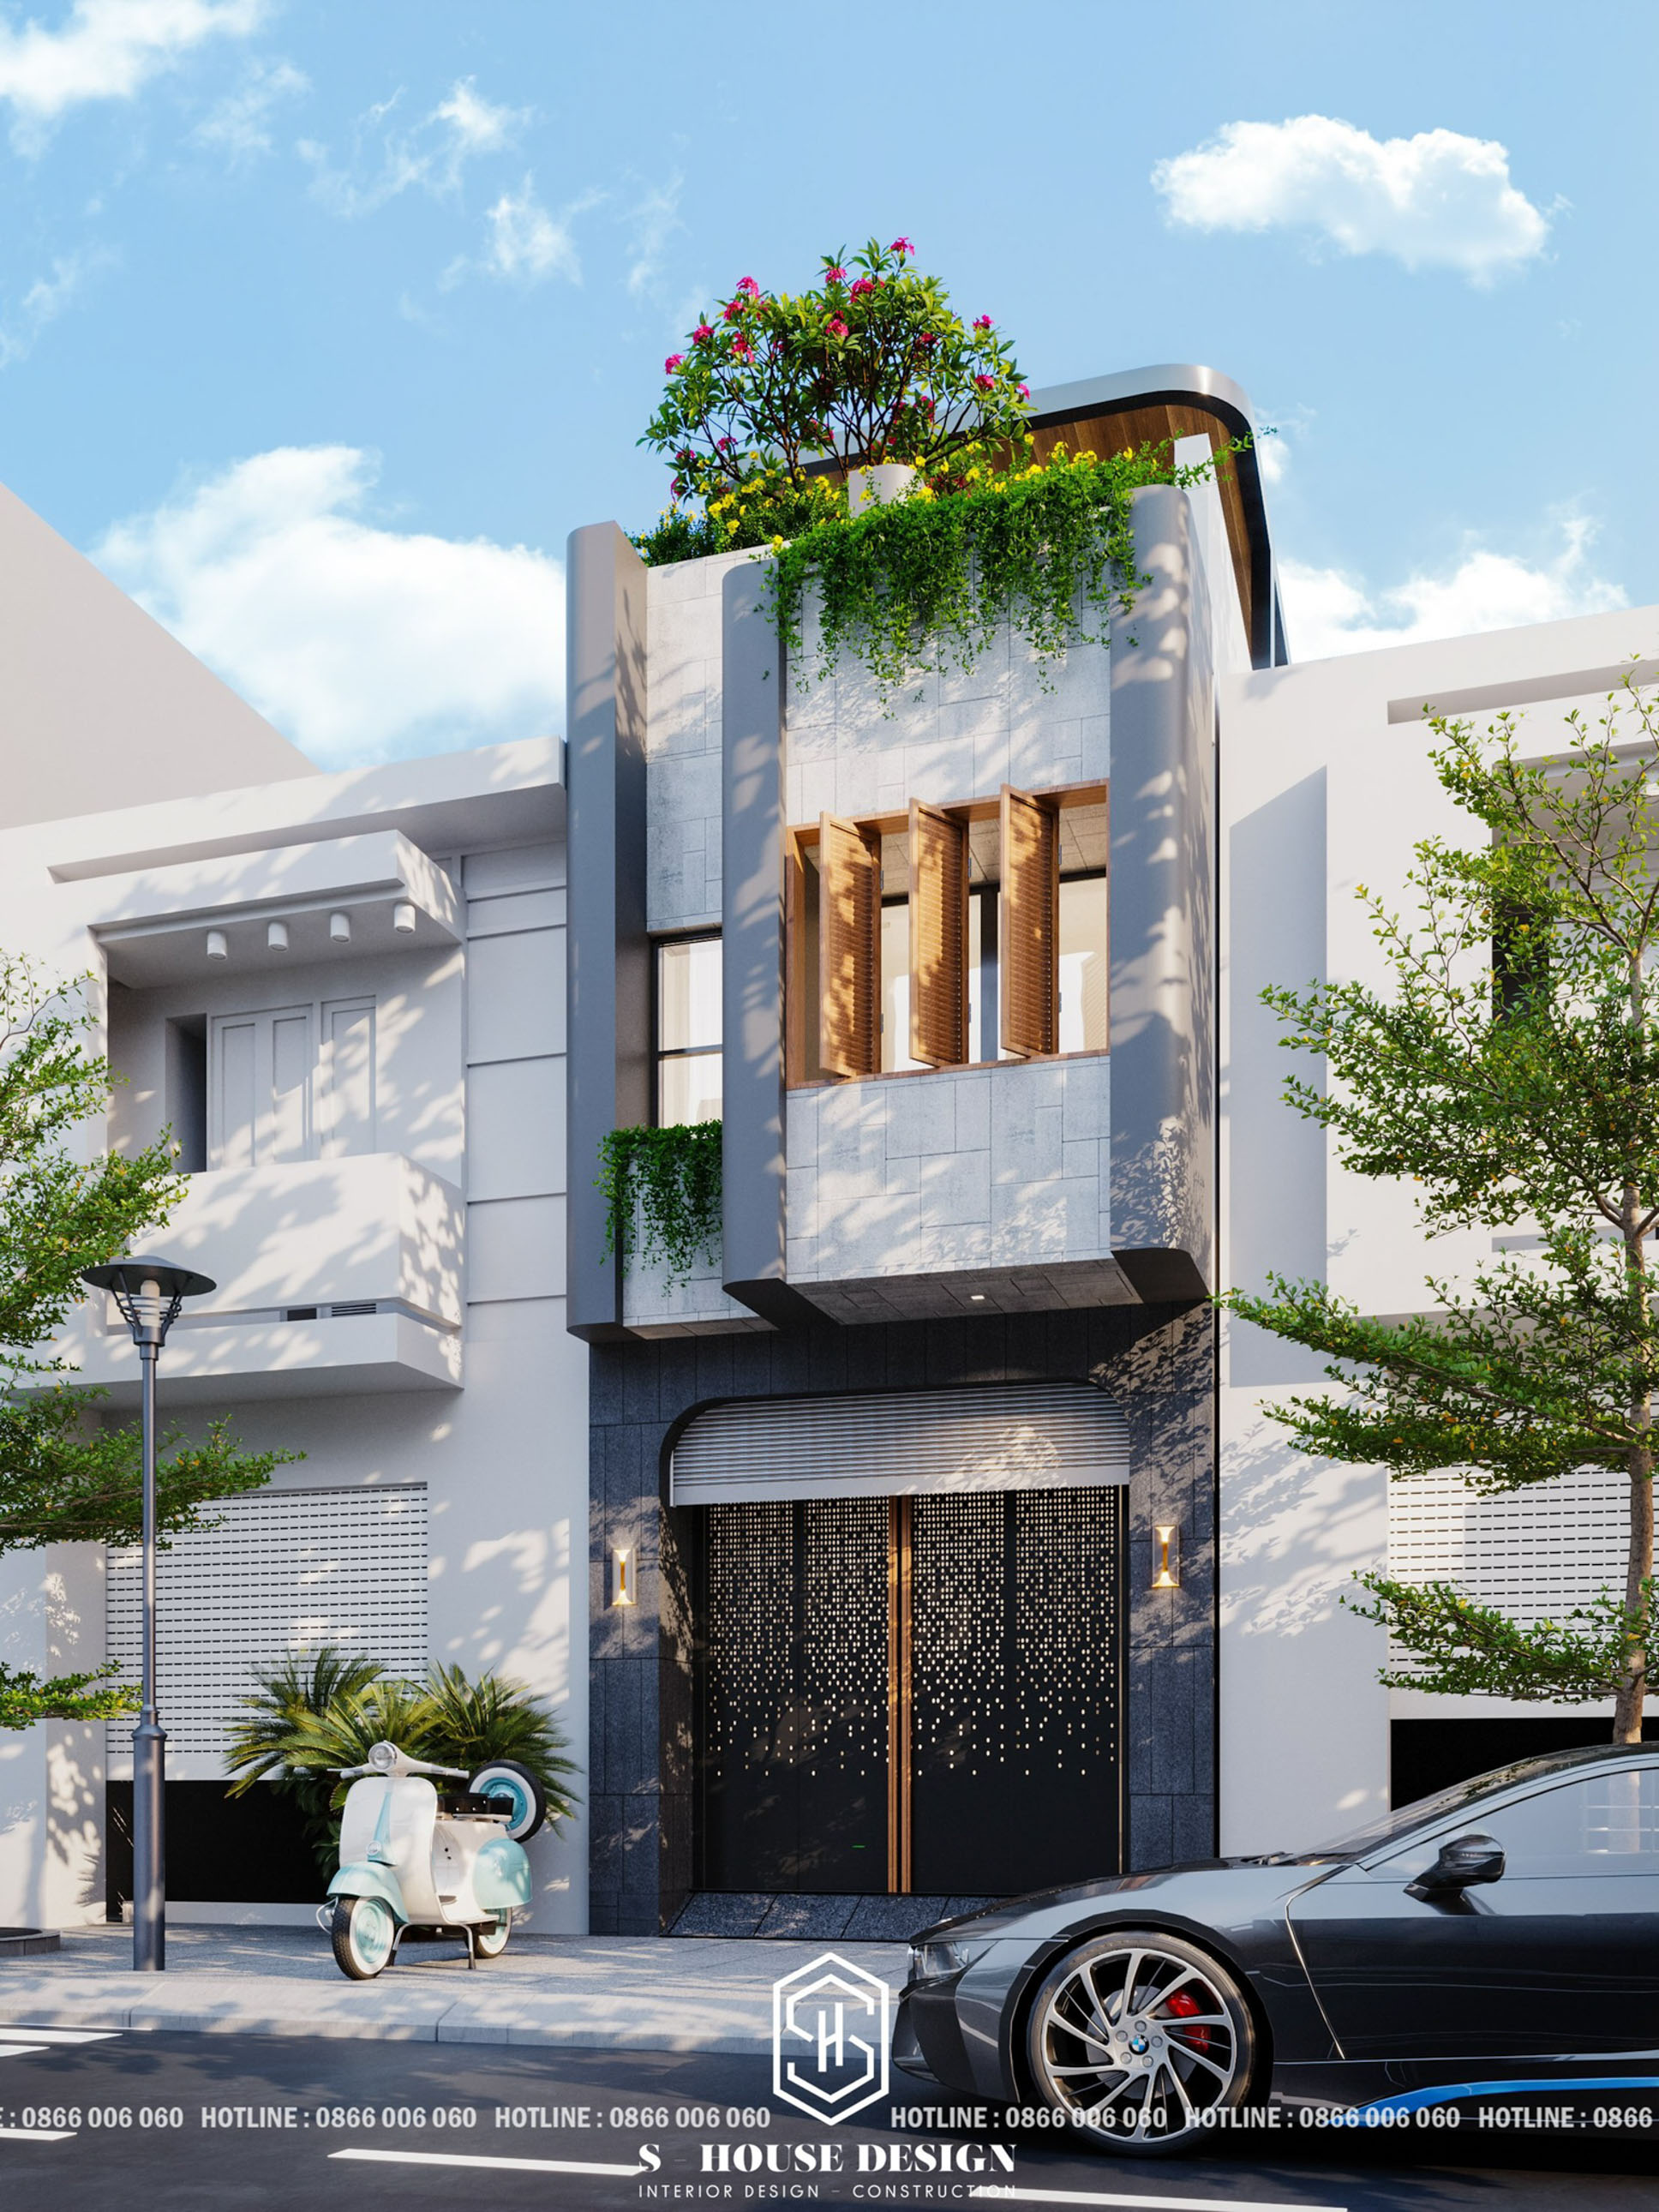 thiết kế nhà phố 5 tầng hiện đại tiện nghi nâng tầm giá trị sống